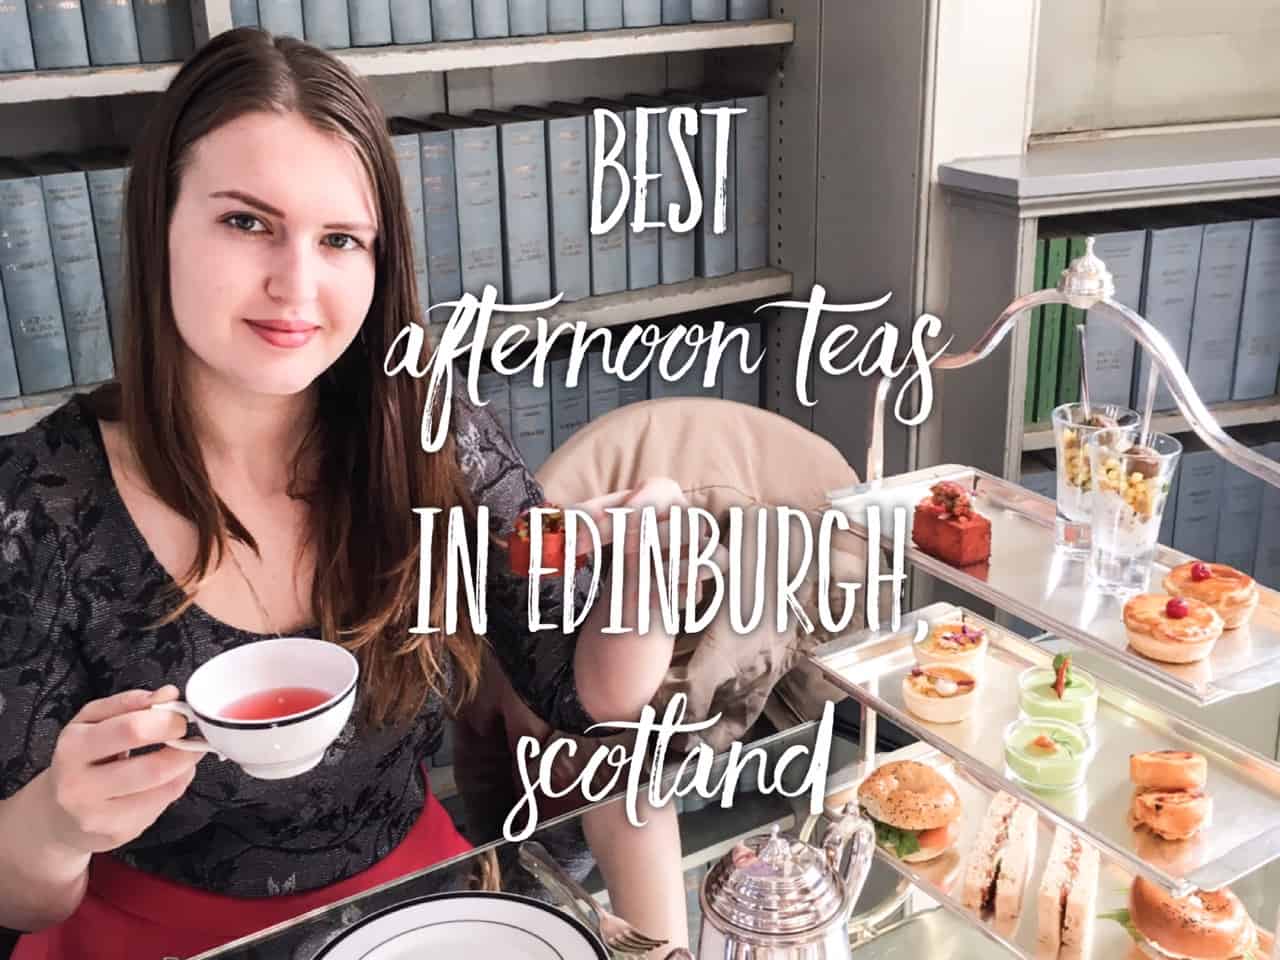 Best afternoon teas in Edinburgh, Scotland. Afternoon Tea in Edinburgh